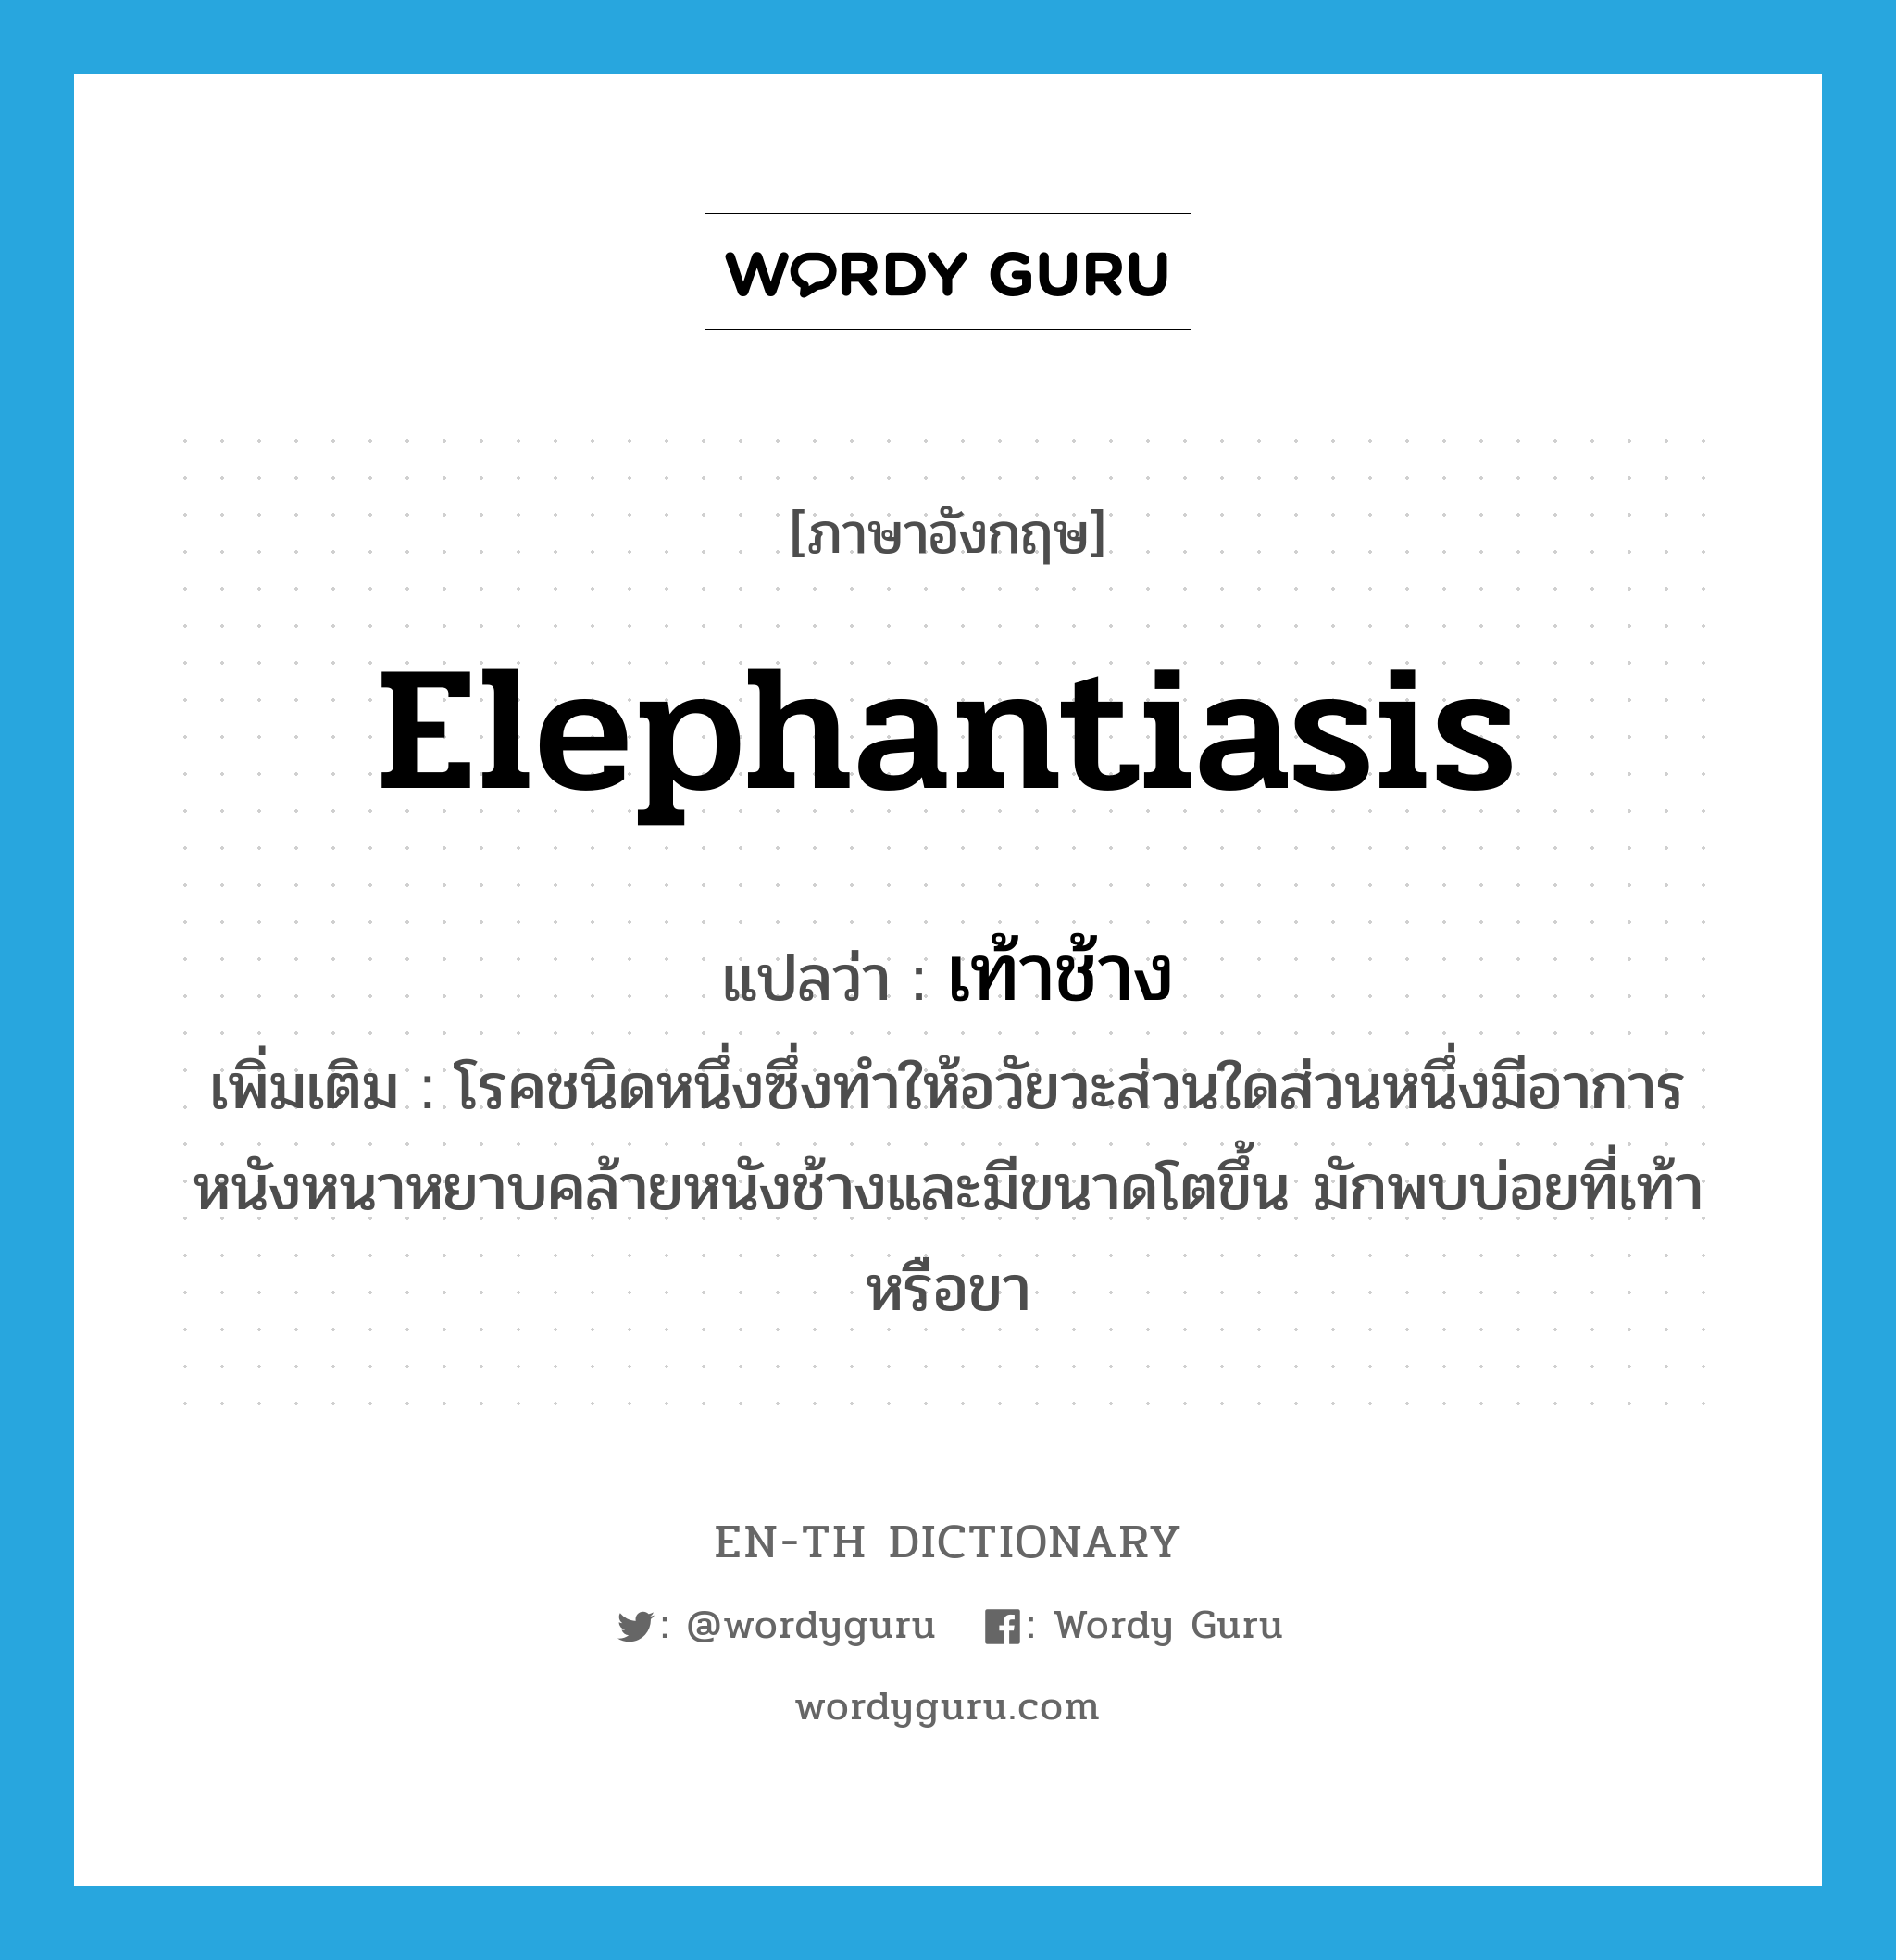 เท้าช้าง ภาษาอังกฤษ?, คำศัพท์ภาษาอังกฤษ เท้าช้าง แปลว่า elephantiasis ประเภท N เพิ่มเติม โรคชนิดหนึ่งซึ่งทำให้อวัยวะส่วนใดส่วนหนึ่งมีอาการหนังหนาหยาบคล้ายหนังช้างและมีขนาดโตขึ้น มักพบบ่อยที่เท้าหรือขา หมวด N